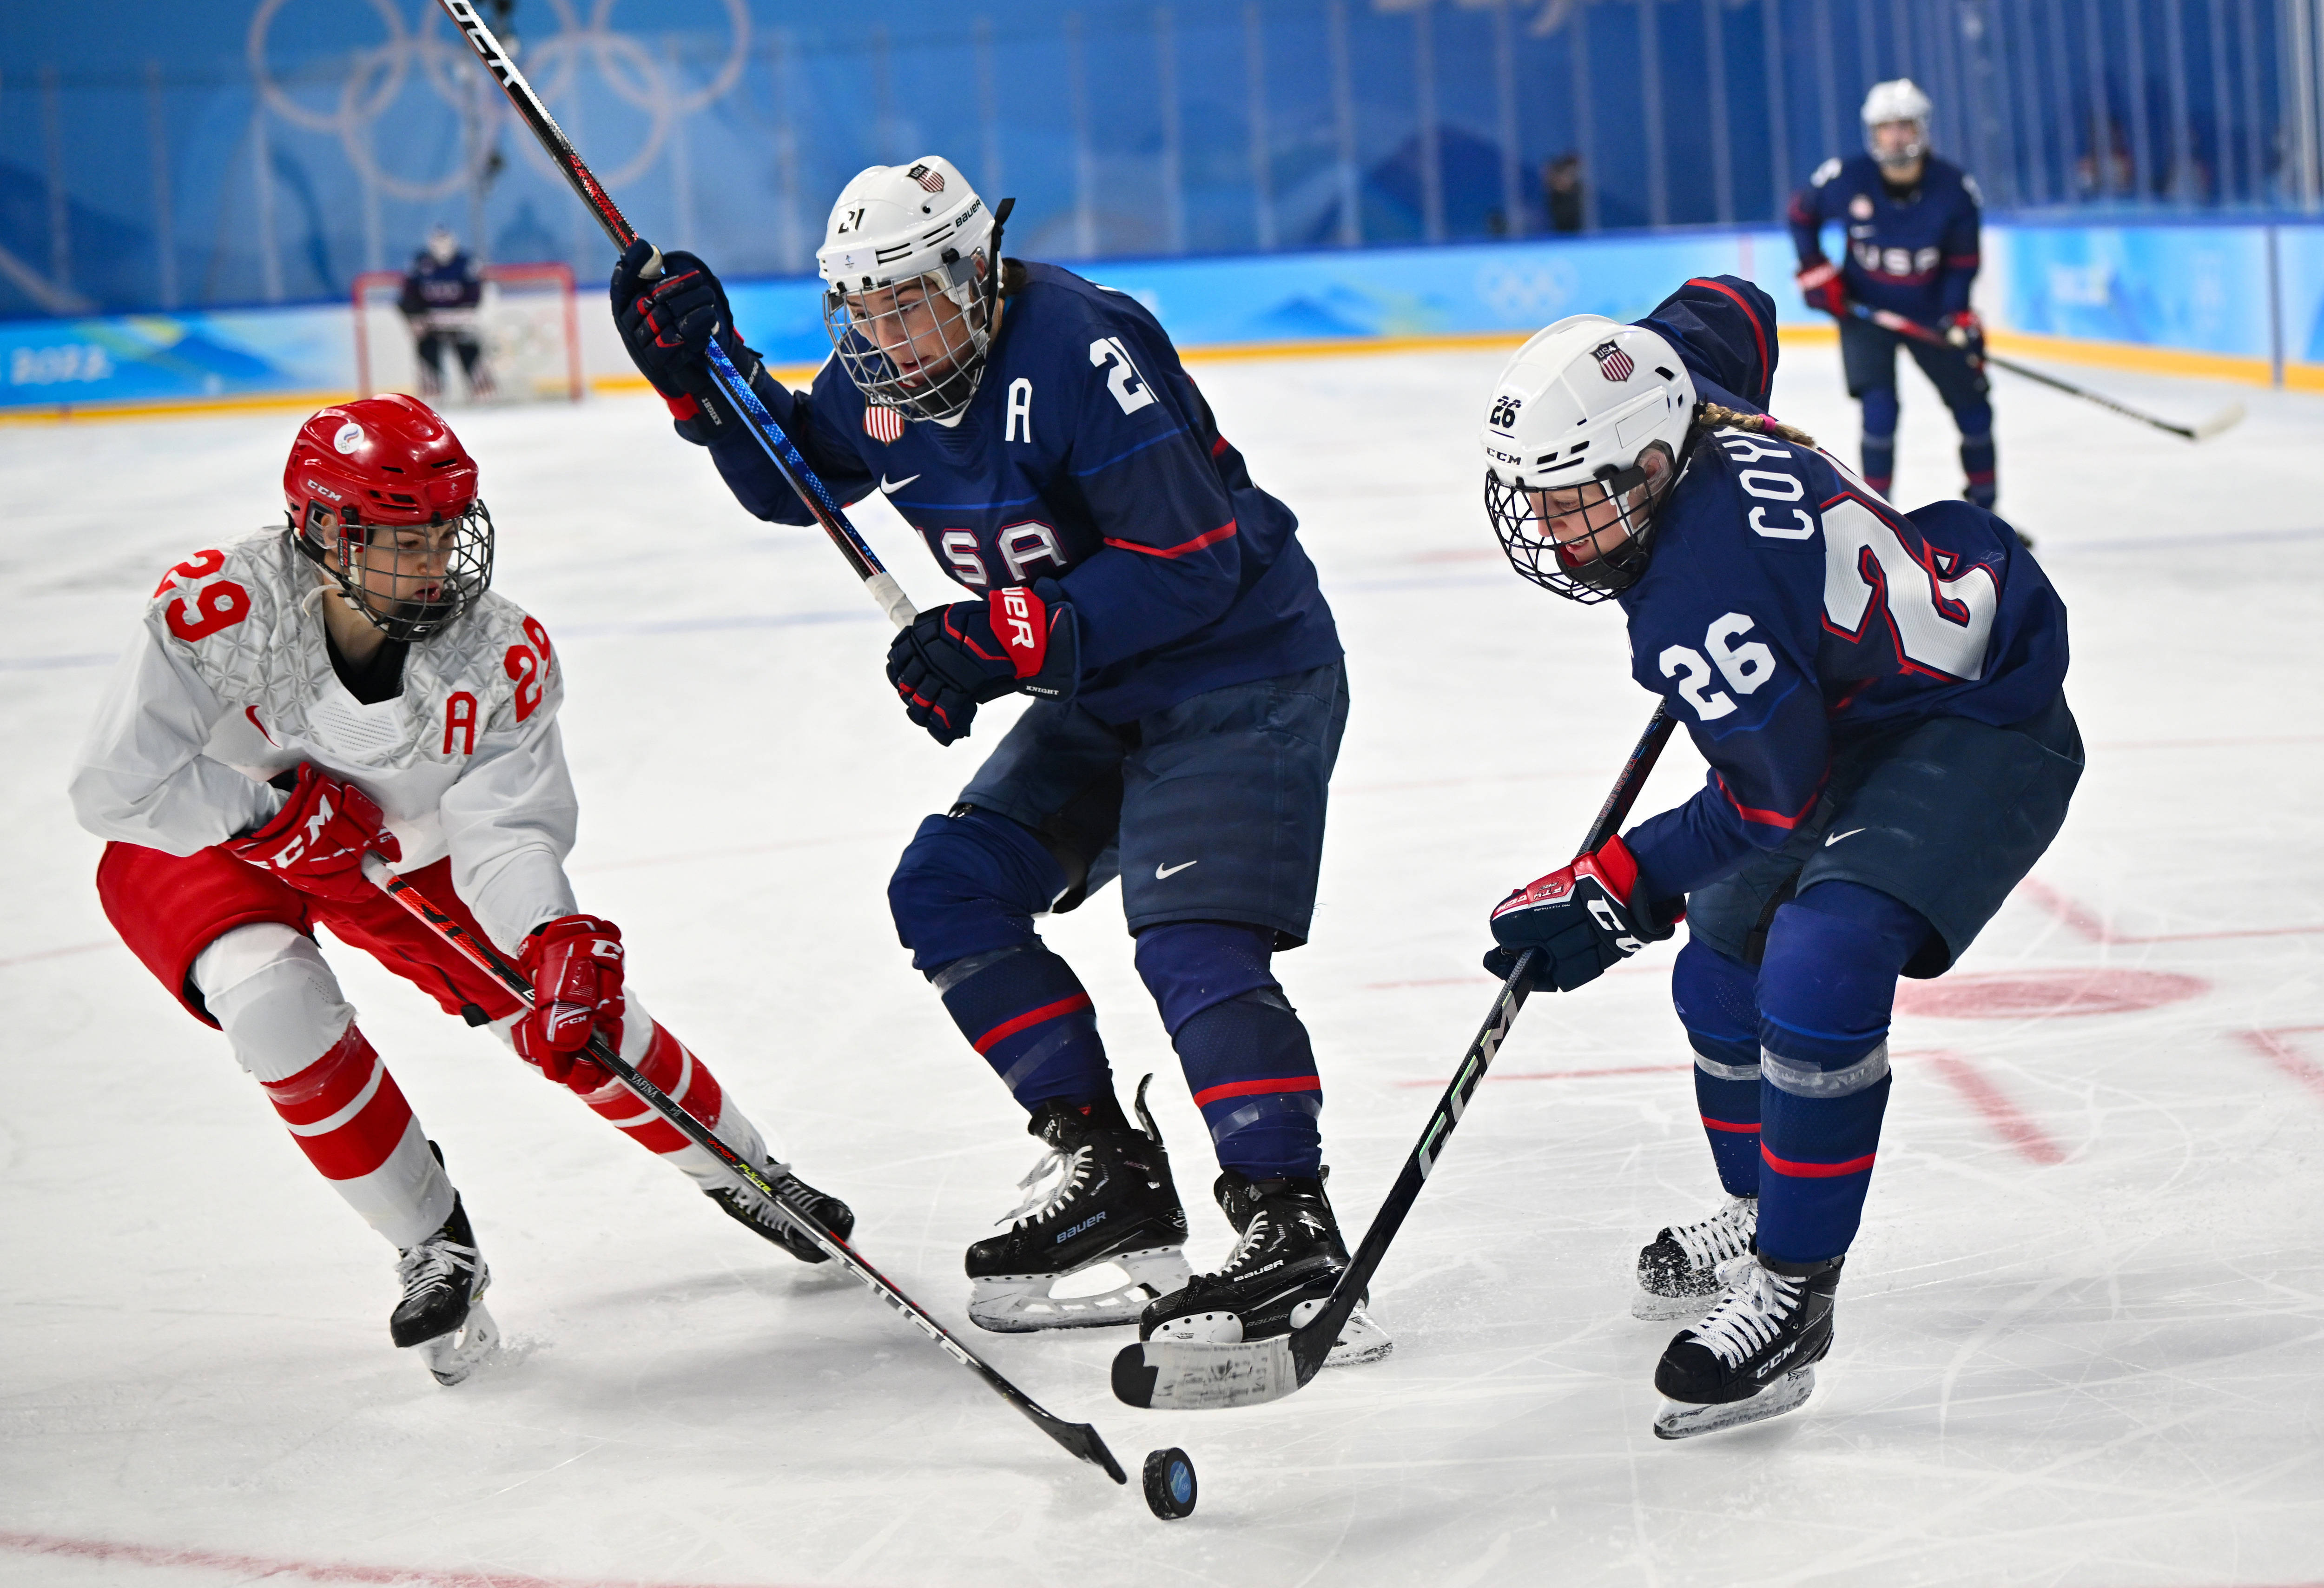 2022冬奥会女子冰球图片